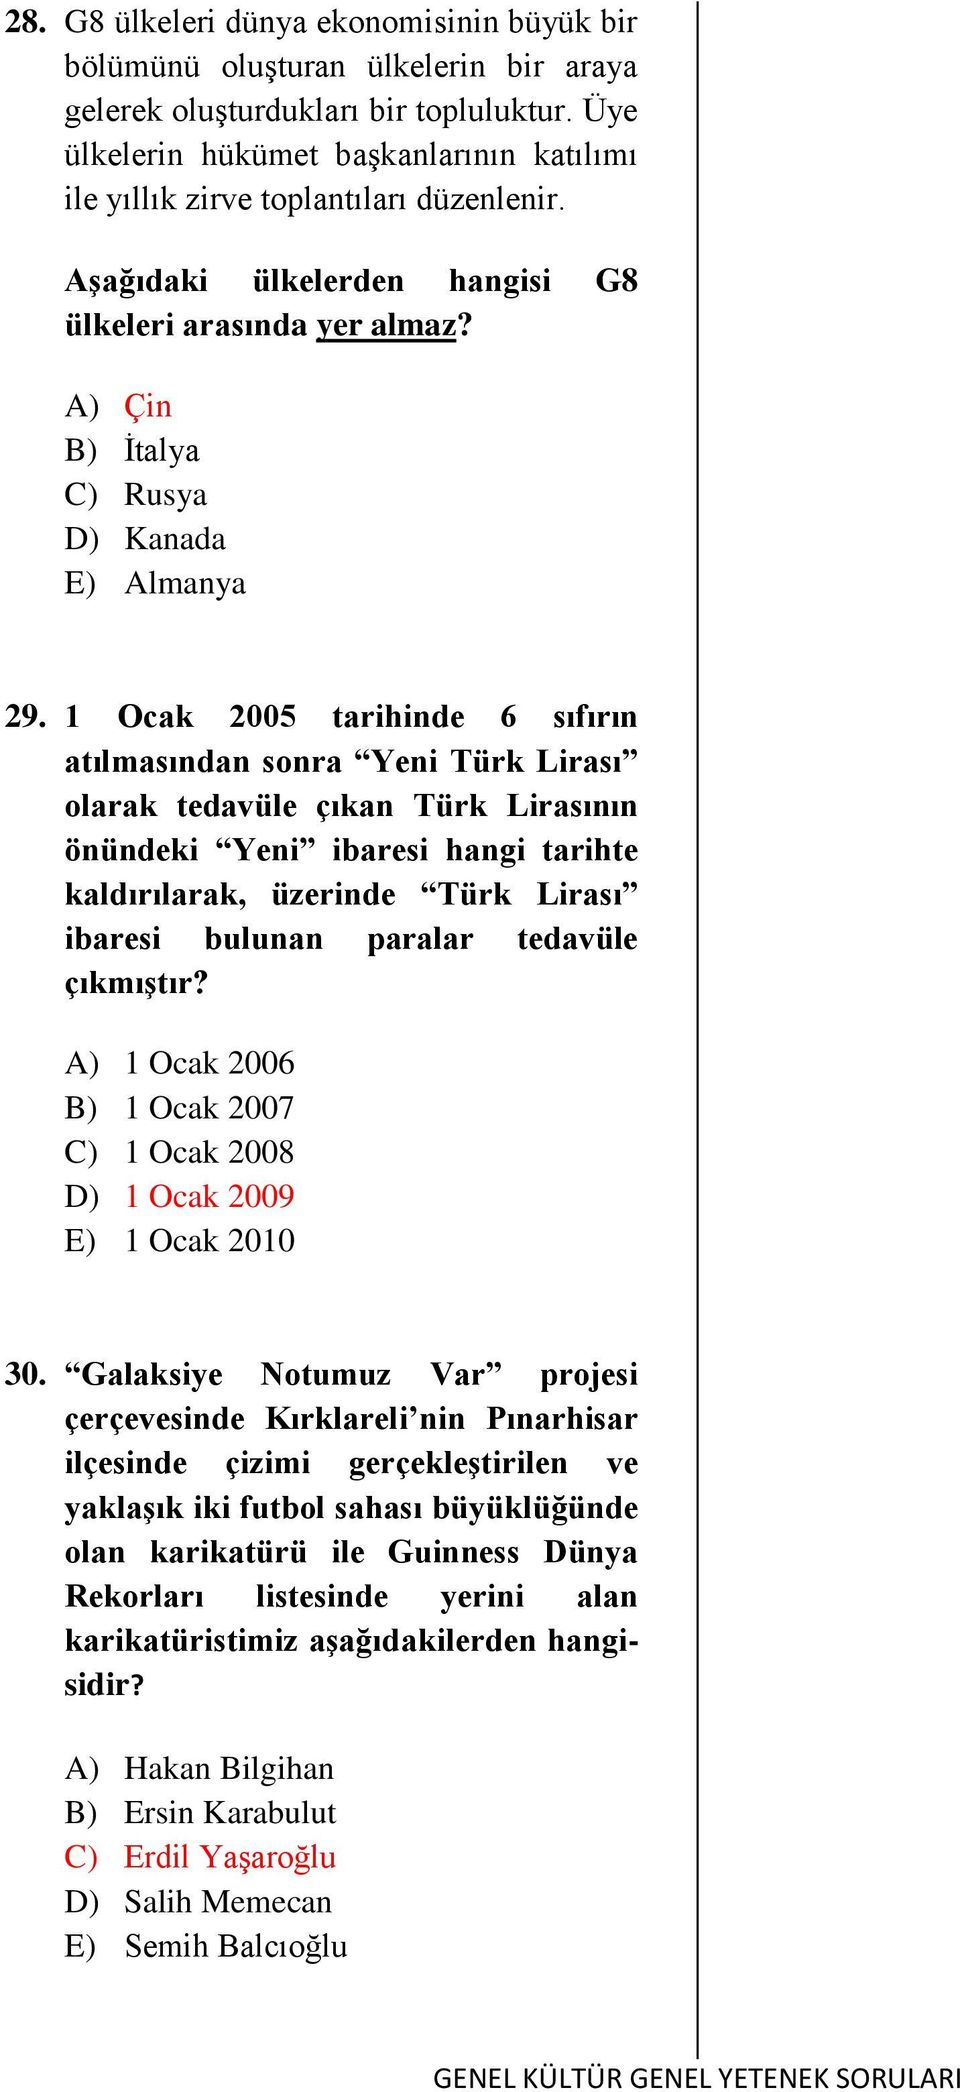 1 Ocak 2005 tarihinde 6 sıfırın atılmasından sonra Yeni Türk Lirası olarak tedavüle çıkan Türk Lirasının önündeki Yeni ibaresi hangi tarihte kaldırılarak, üzerinde Türk Lirası ibaresi bulunan paralar